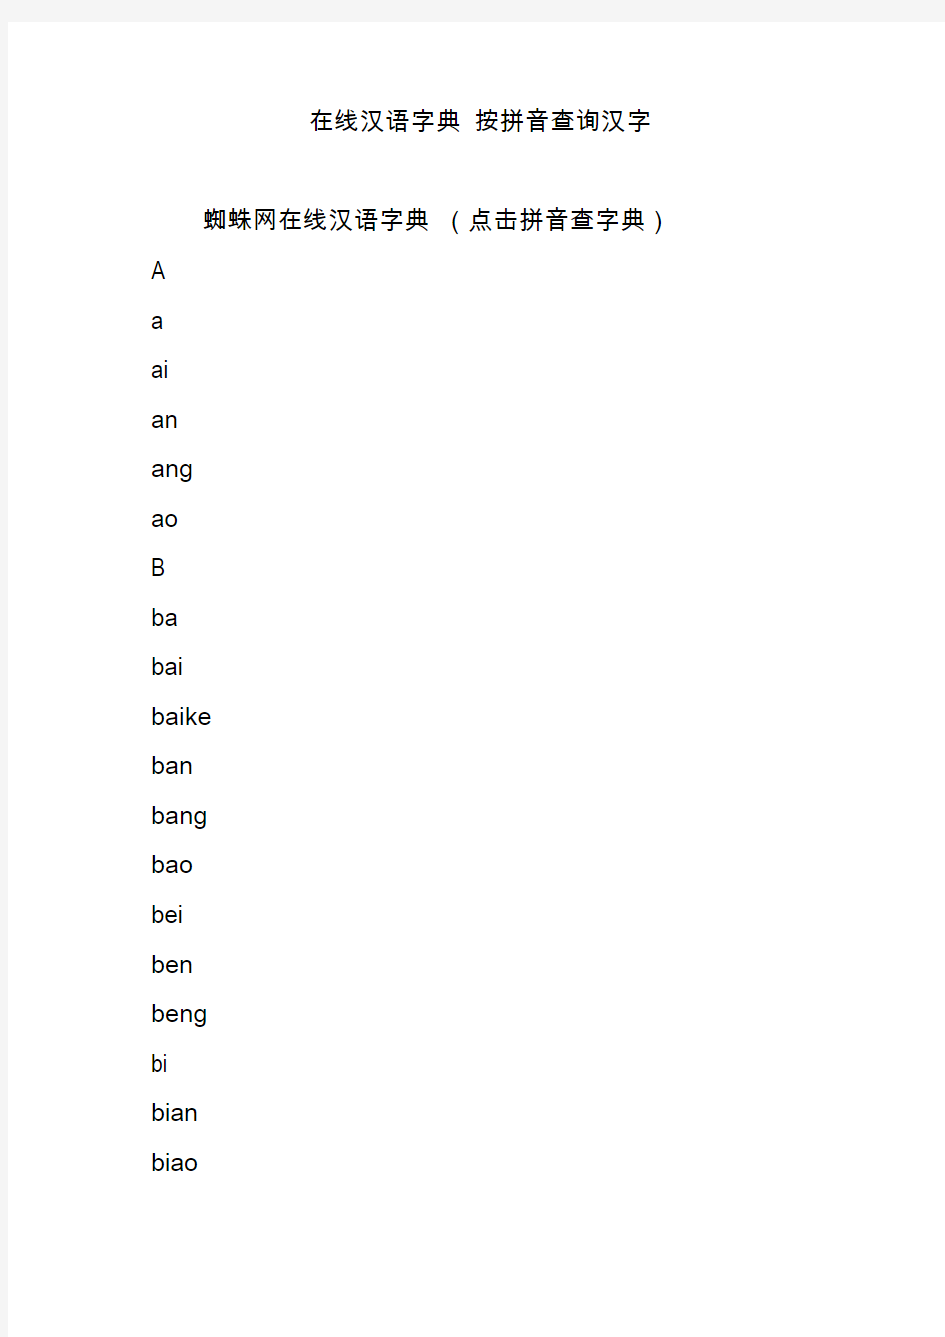 在线汉语字典 按拼音查询汉字